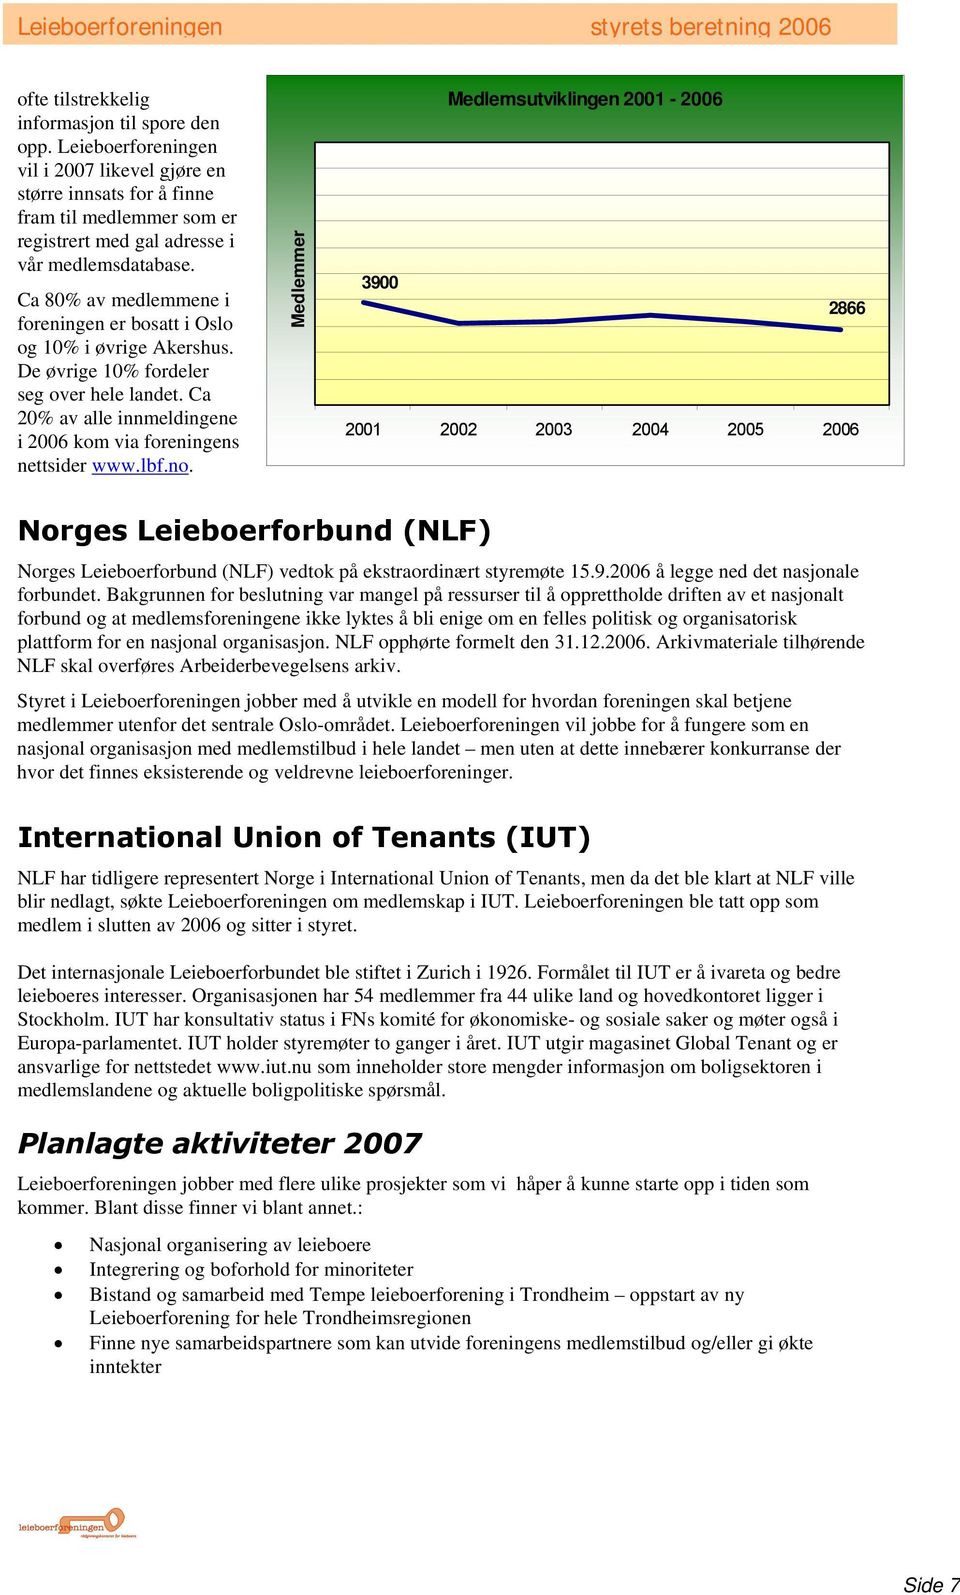 Ca 80% av medlemmene i foreningen er bosatt i Oslo og 10% i øvrige Akershus. De øvrige 10% fordeler seg over hele landet. Ca 20% av alle innmeldingene i 2006 kom via foreningens nettsider www.lbf.no.